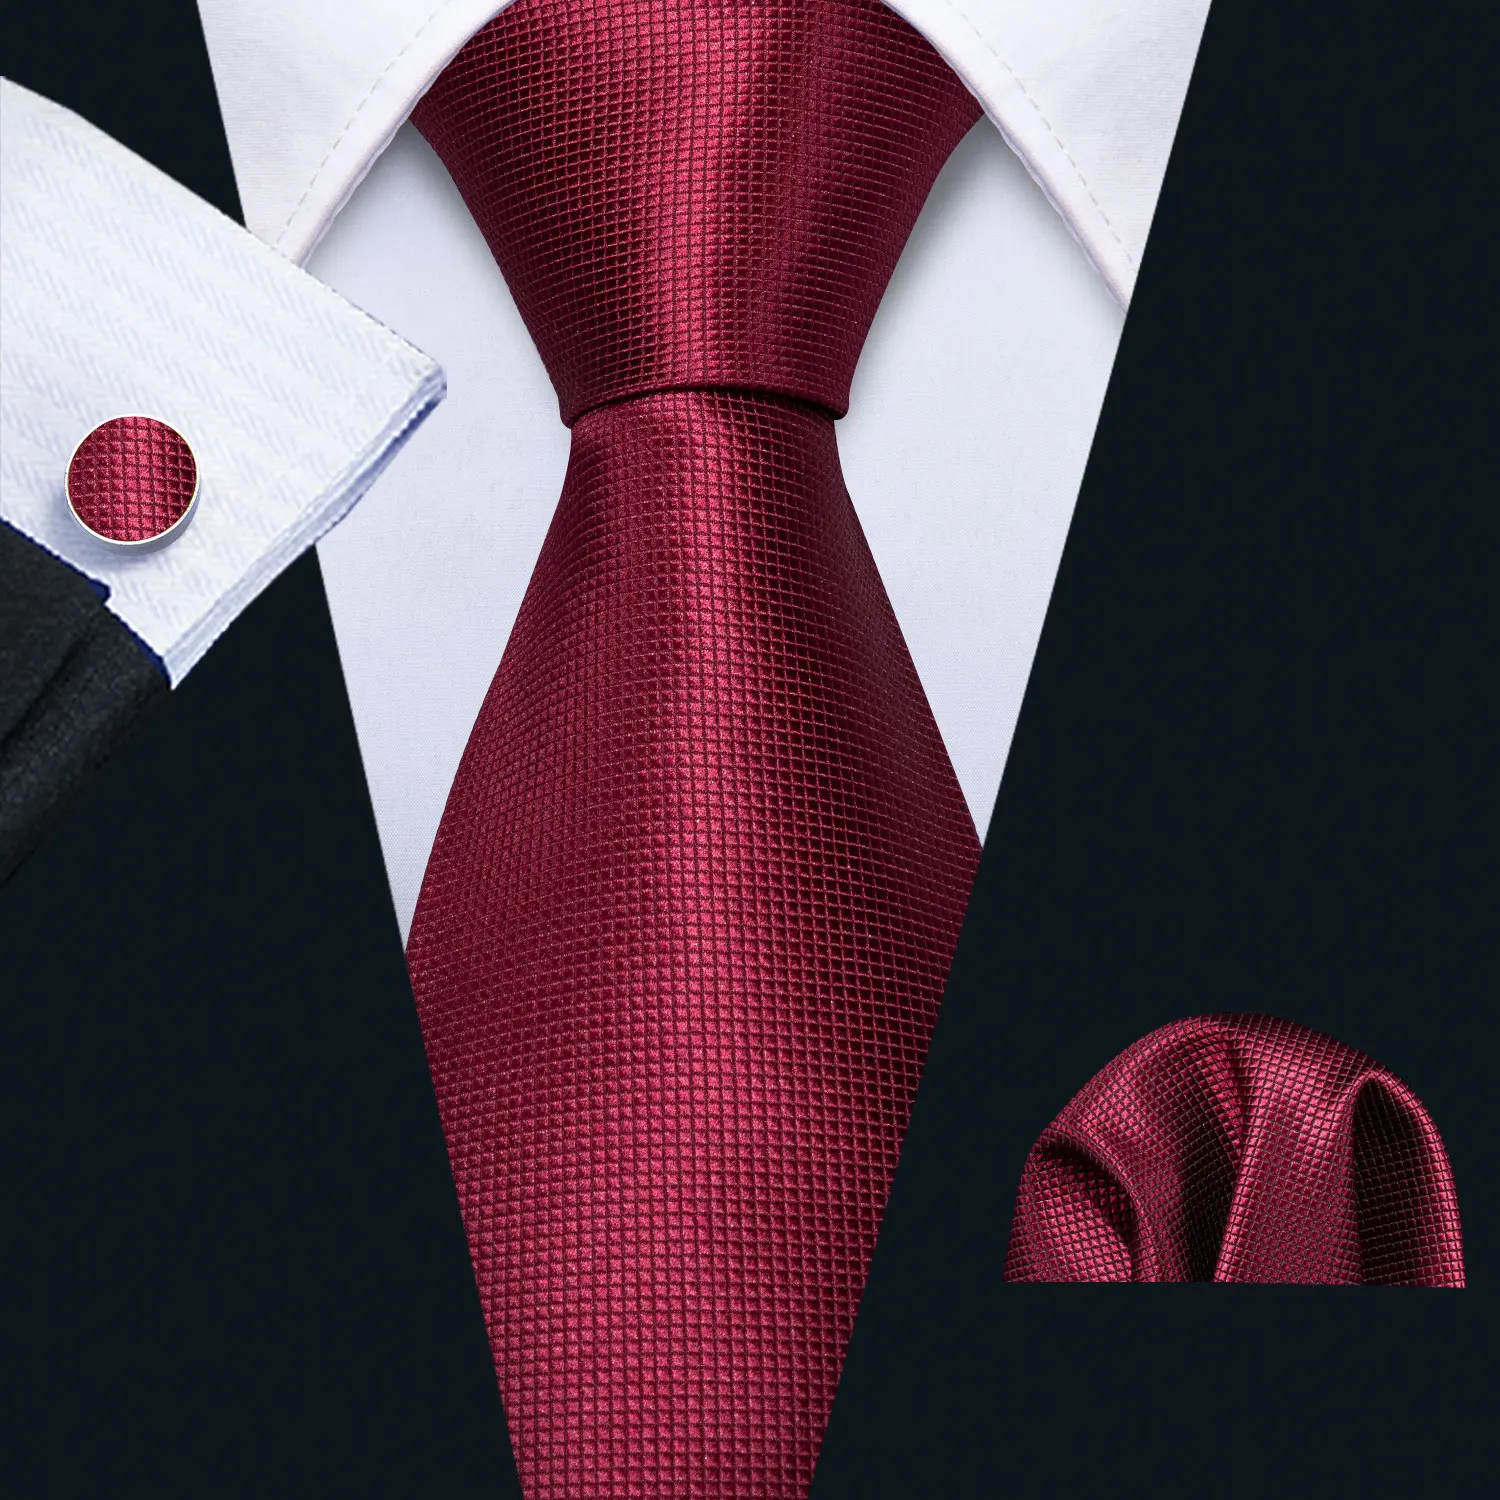 100% Woven Silk Necktie with Pocket Square - Dark Red - Vavra's